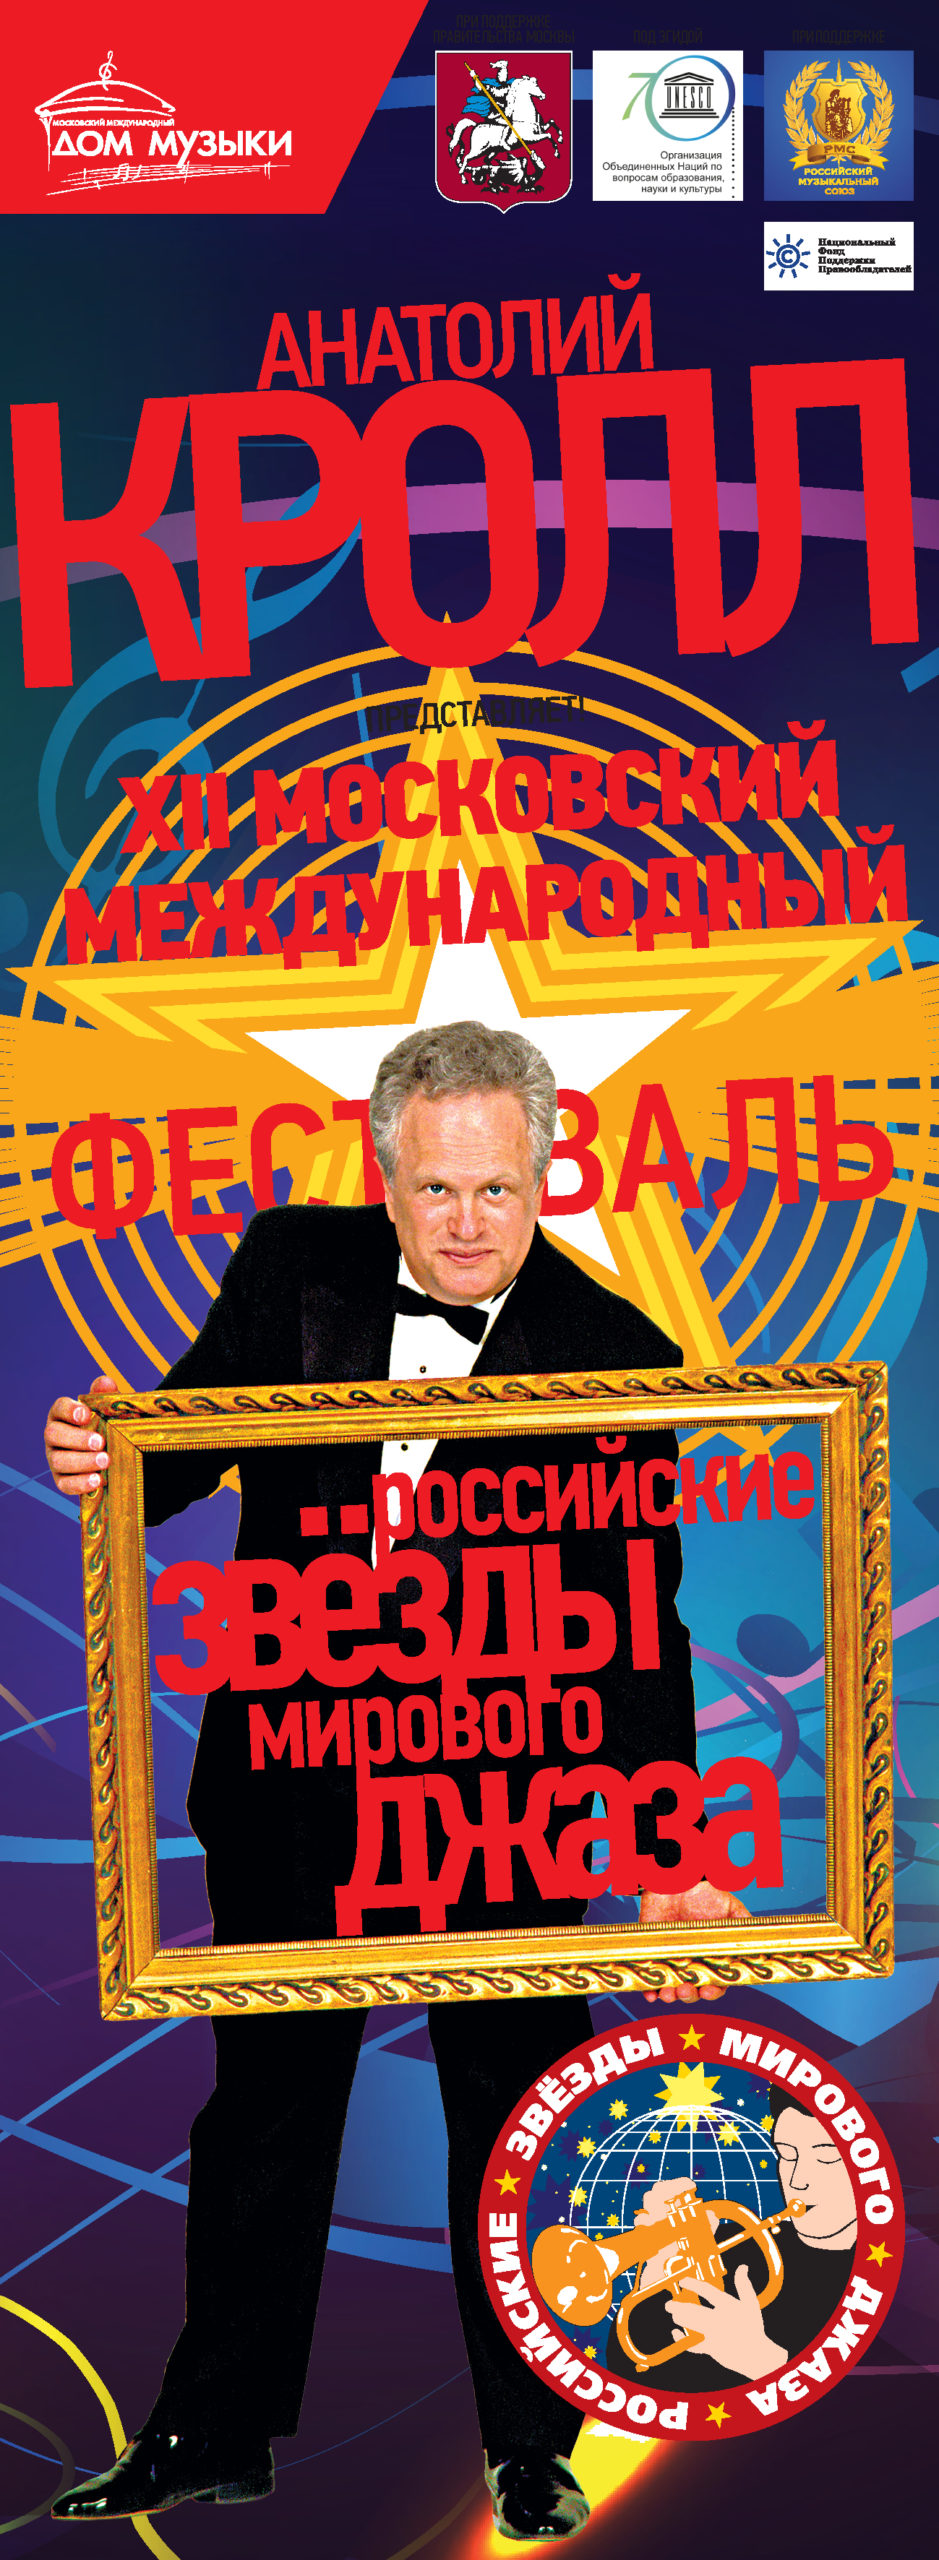 НФПП – партнер XII Московского международного фестиваля «Российские звезды мирового джаза»